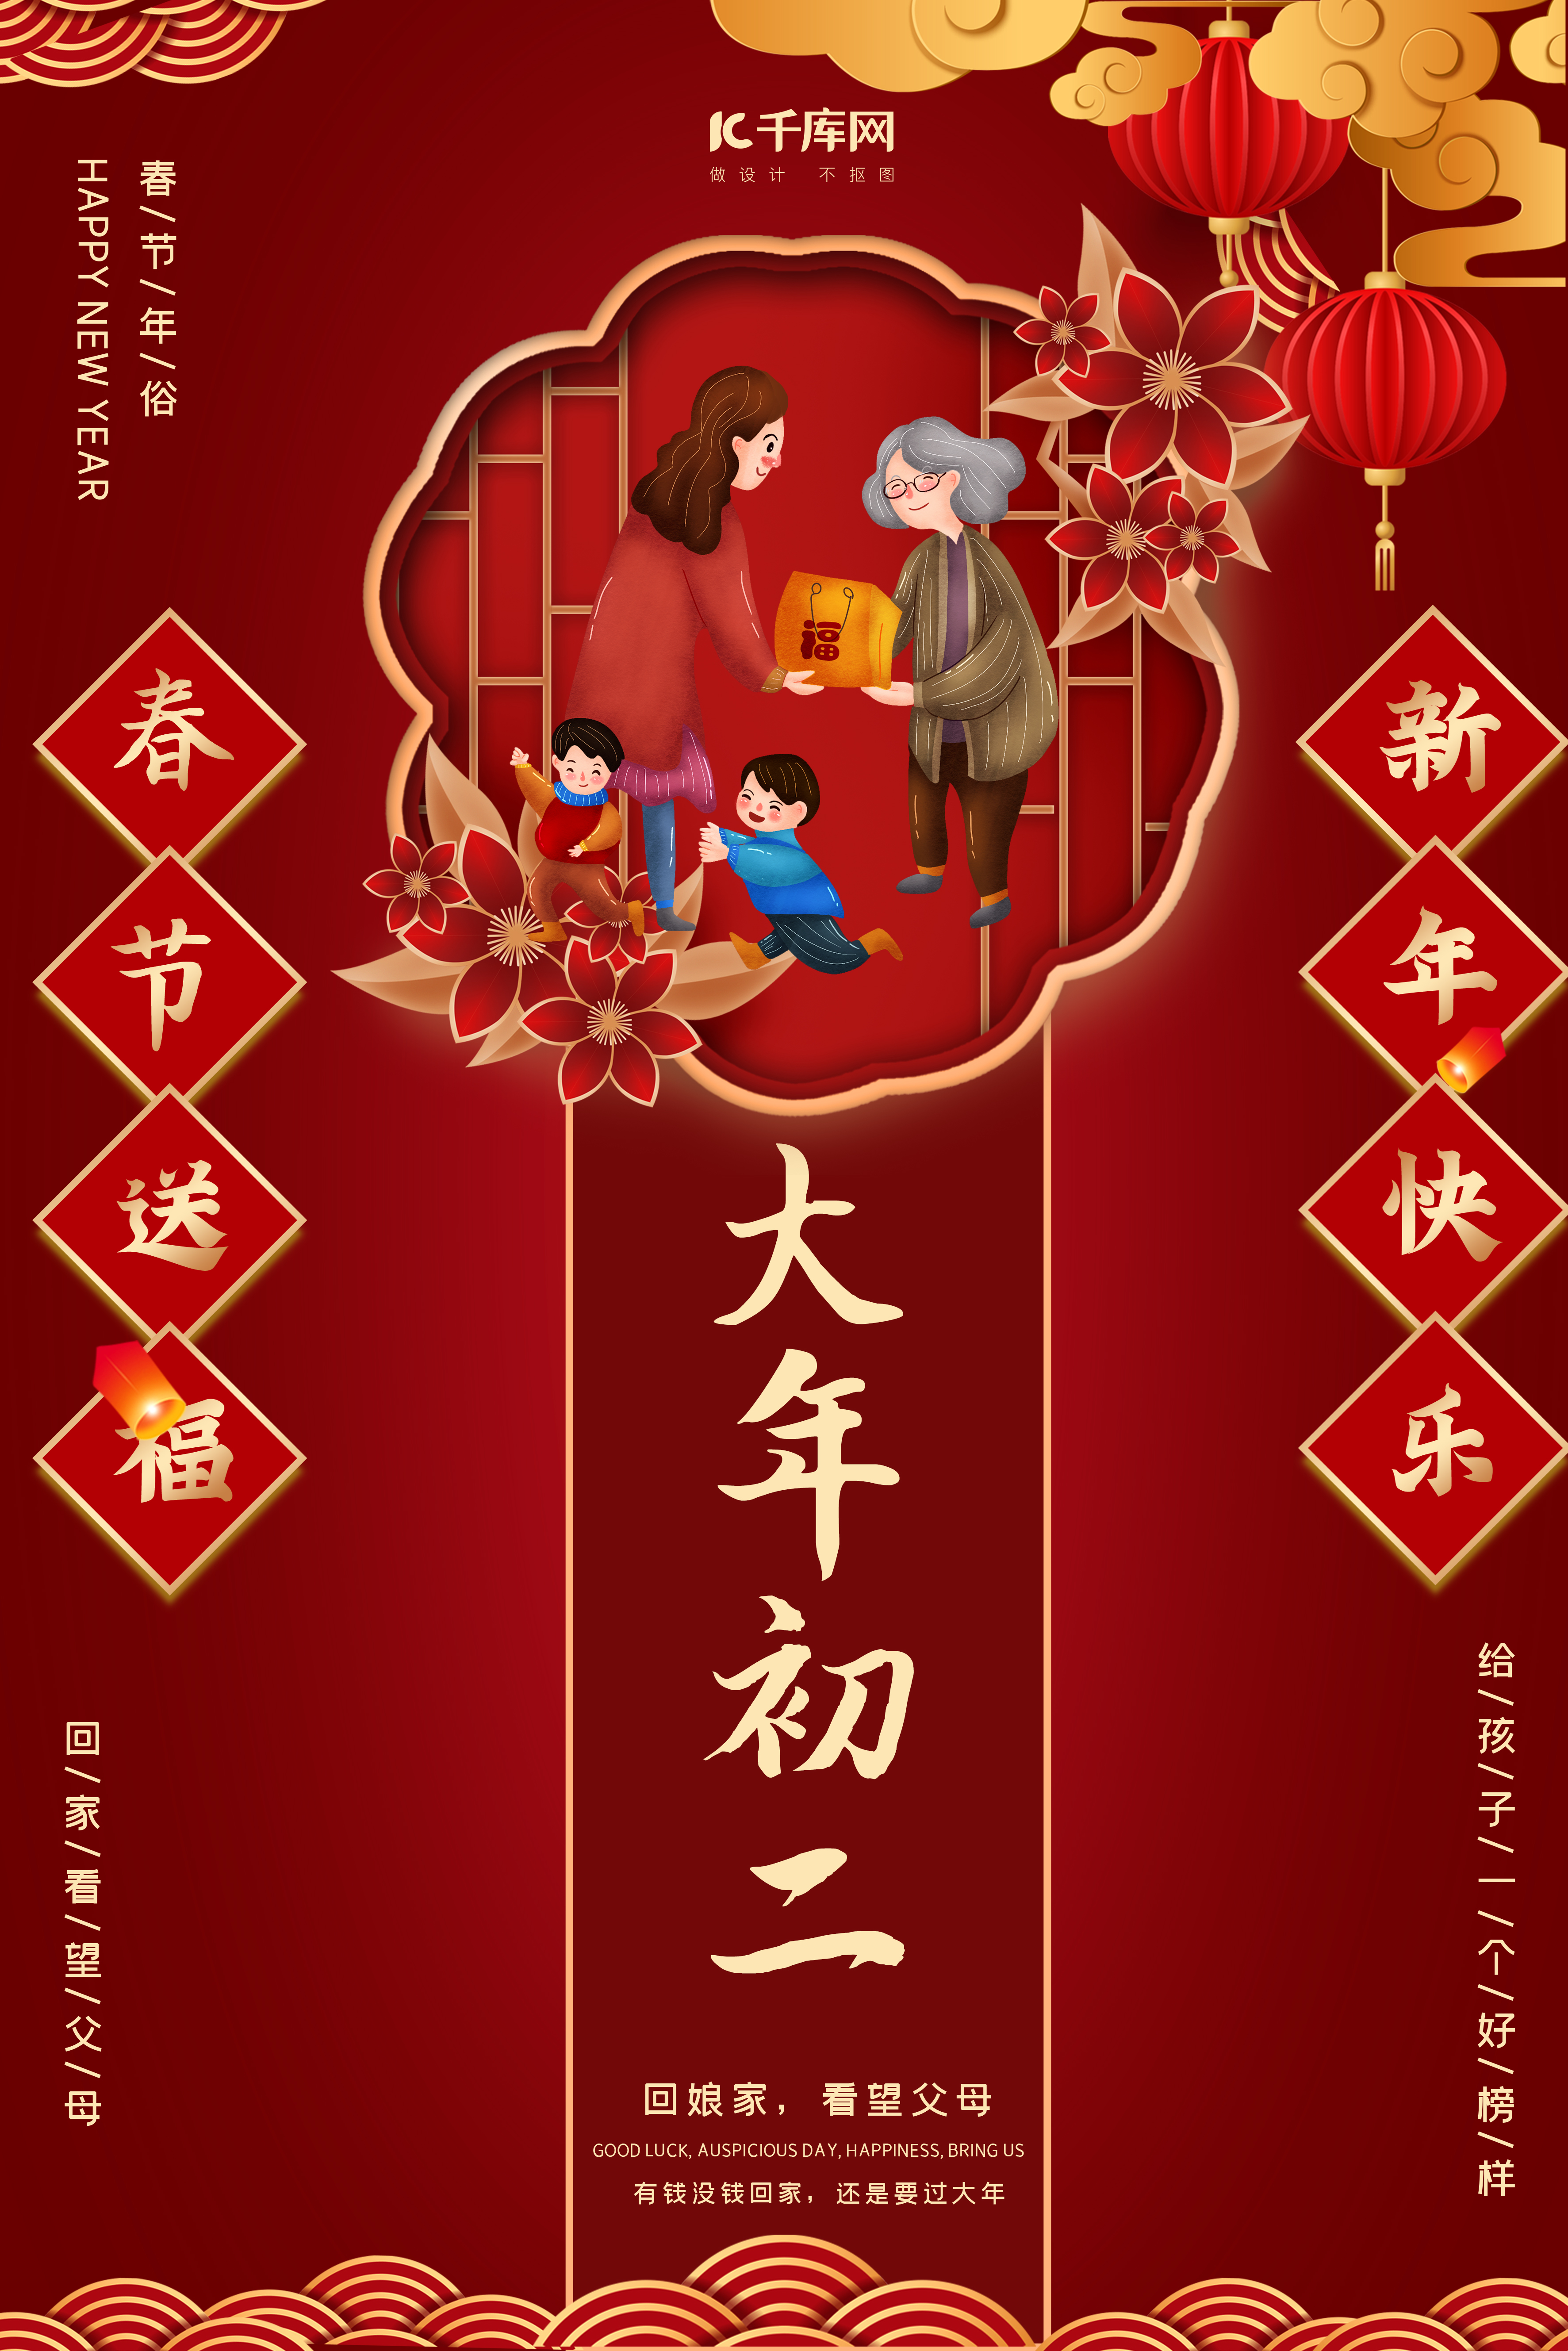 大年初二回娘家暗红中国风剪纸海报图片